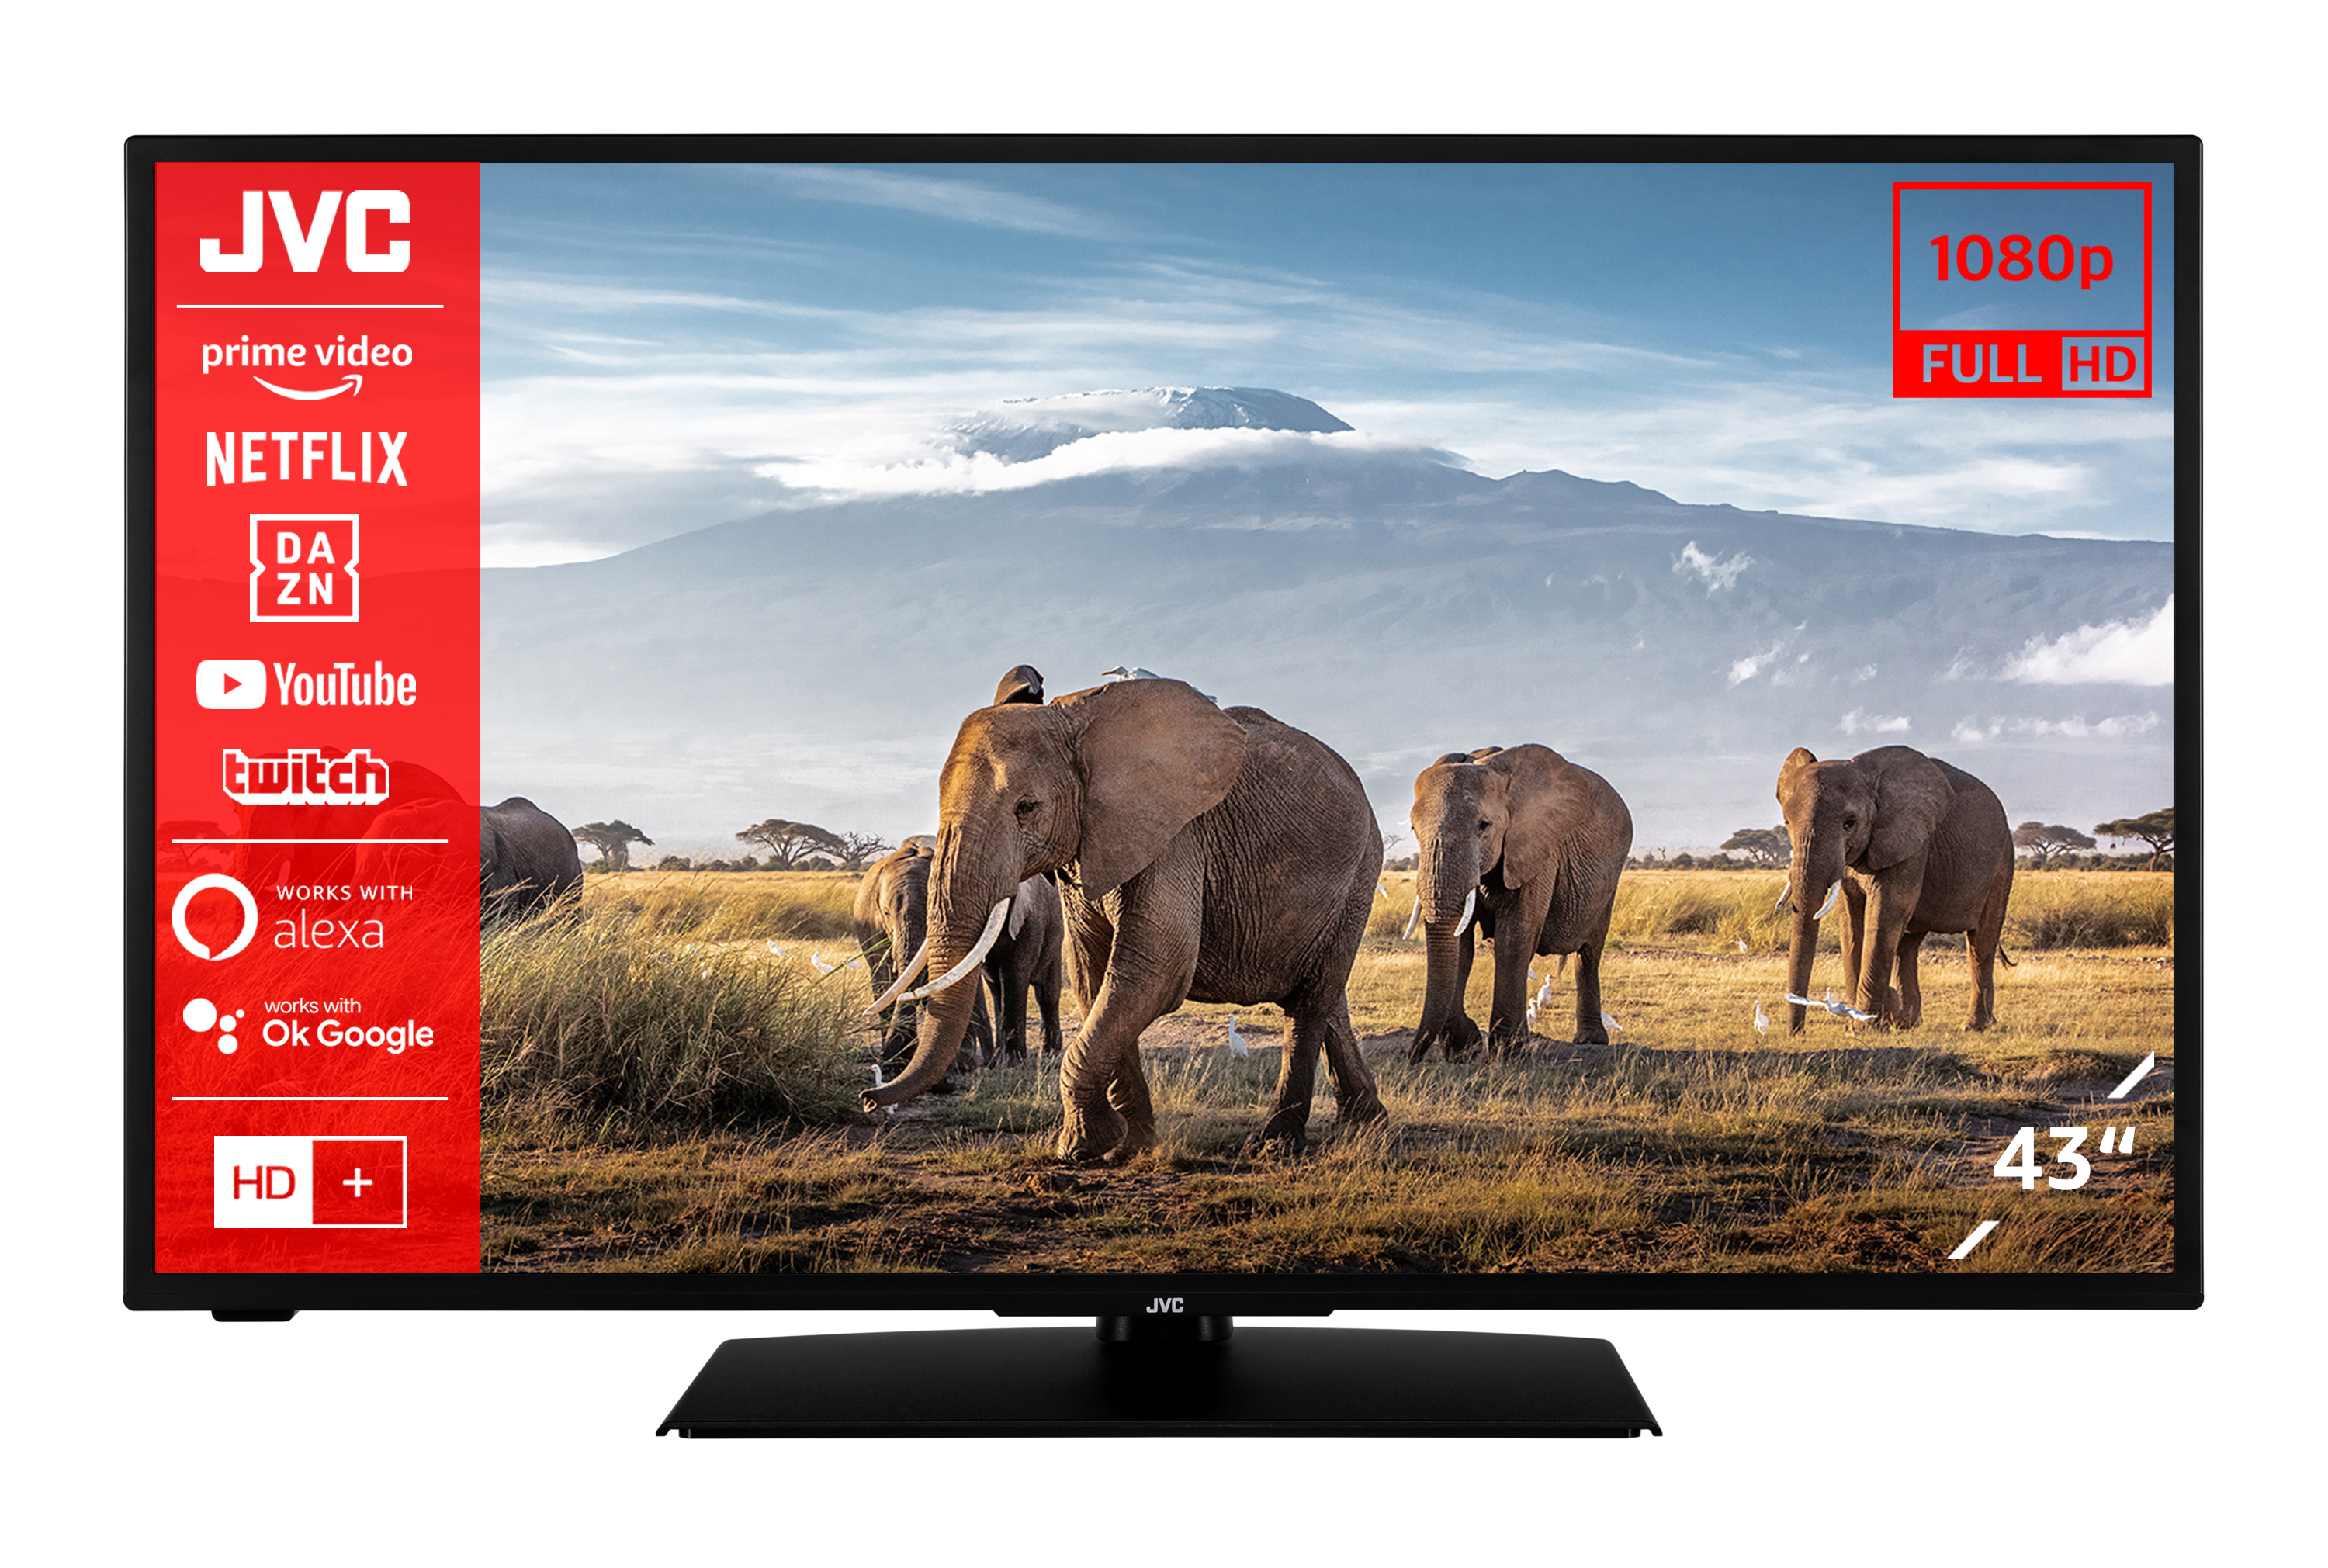 JVC LT-43VF5156 Full-HD, TV SMART (Flat, LED TV) / 43 cm, 108 Zoll